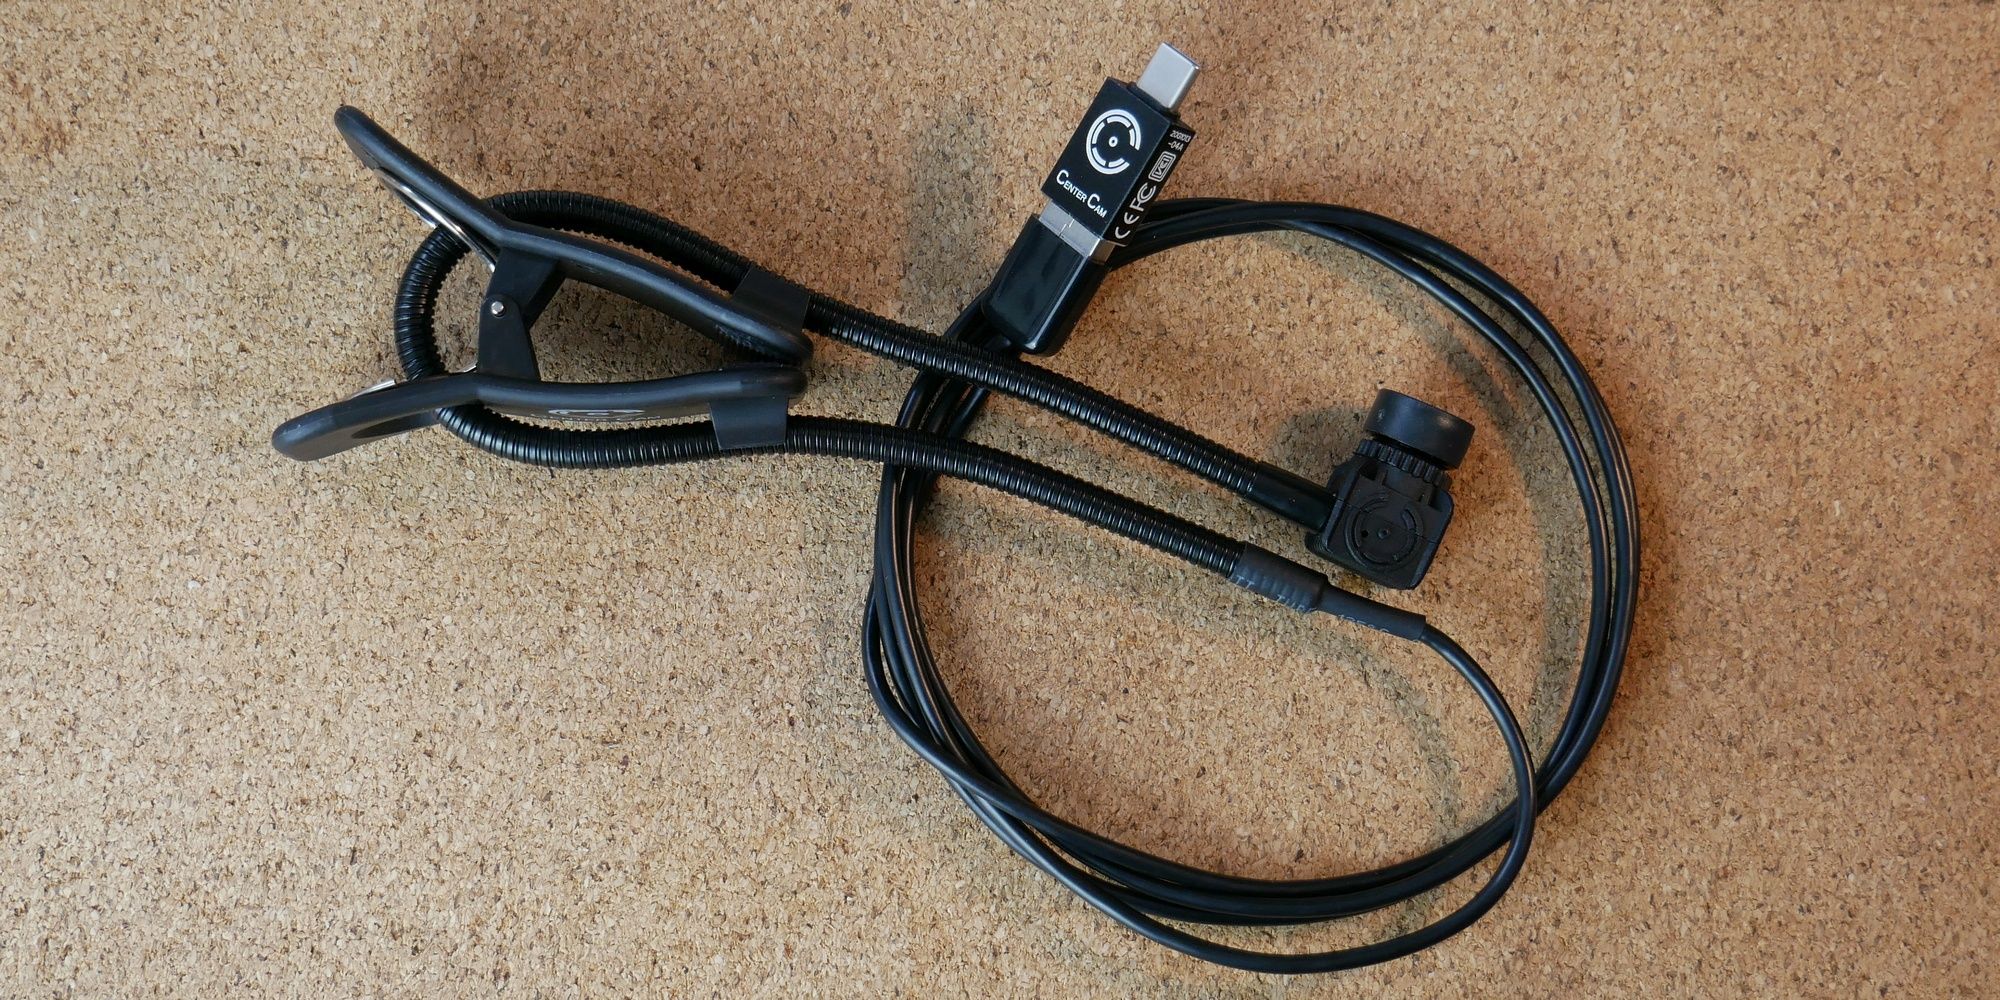 نمای جانبی وب کم مرکزی با گیره و کابل USB